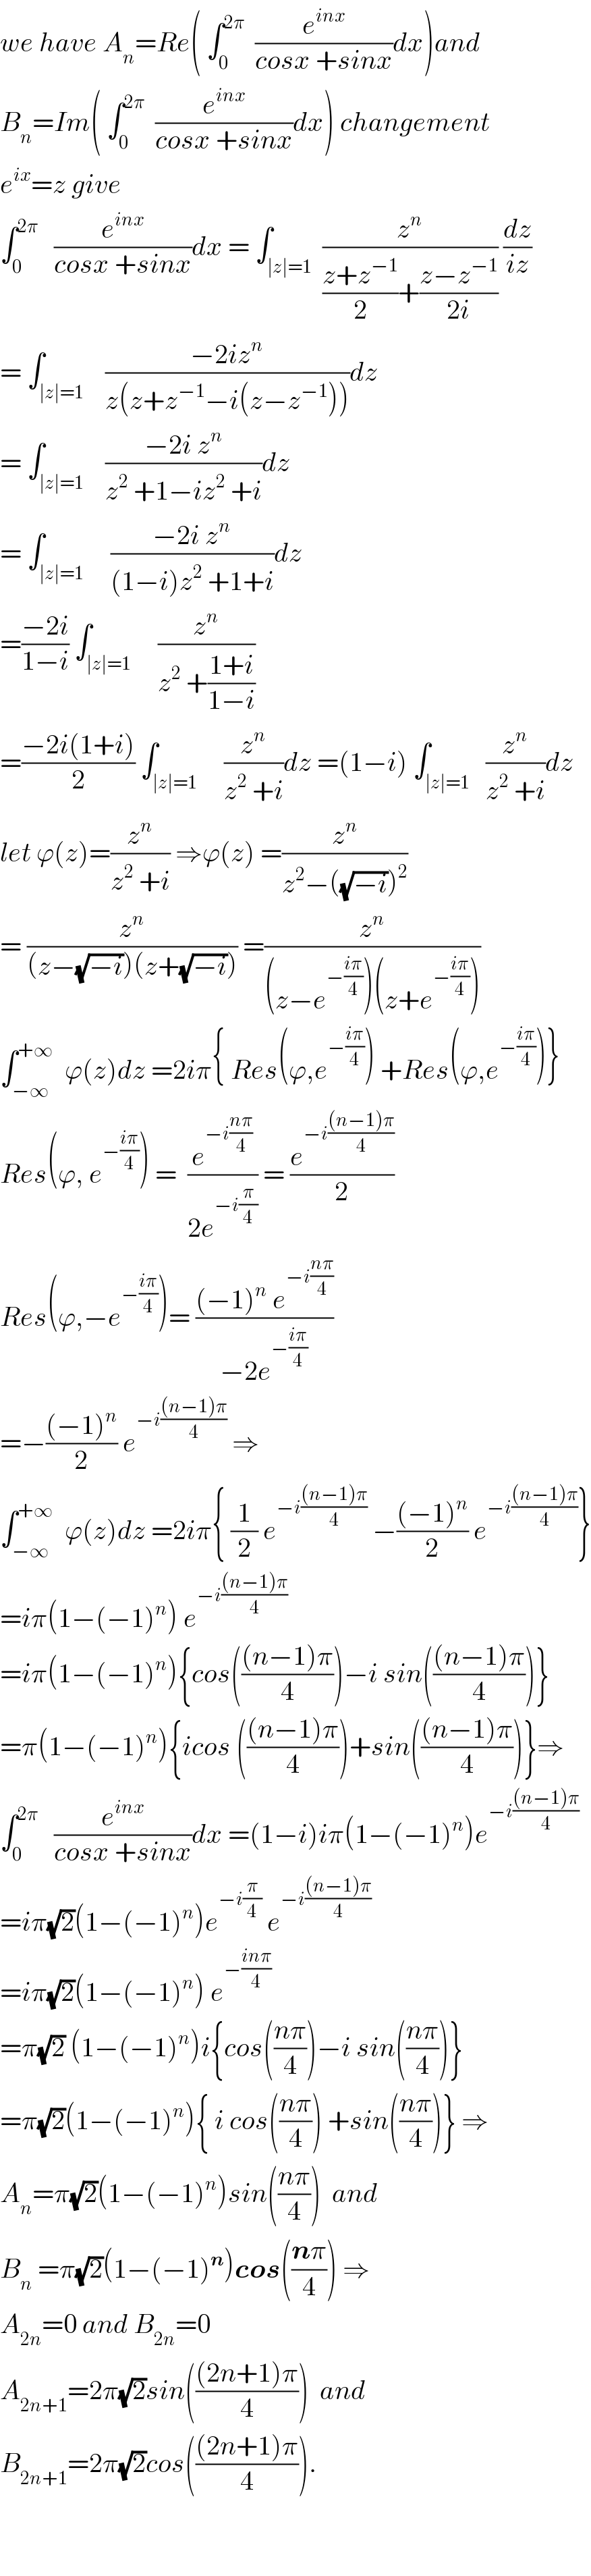 we have A_n =Re( ∫_0 ^(2π)   (e^(inx) /(cosx +sinx))dx)and  B_n =Im( ∫_0 ^(2π)   (e^(inx) /(cosx +sinx))dx) changement  e^(ix) =z give  ∫_0 ^(2π)    (e^(inx) /(cosx +sinx))dx = ∫_(∣z∣=1)  (z^n /(((z+z^(−1) )/2)+((z−z^(−1) )/(2i)))) (dz/(iz))  = ∫_(∣z∣=1)    ((−2iz^n )/(z(z+z^(−1) −i(z−z^(−1) ))))dz  = ∫_(∣z∣=1)    ((−2i z^n )/(z^2  +1−iz^2  +i))dz  = ∫_(∣z∣=1)     ((−2i z^n )/((1−i)z^2  +1+i))dz  =((−2i)/(1−i)) ∫_(∣z∣=1)     (z^n /(z^2  +((1+i)/(1−i))))  =((−2i(1+i))/2) ∫_(∣z∣=1)     (z^n /(z^2  +i))dz =(1−i) ∫_(∣z∣=1)   (z^n /(z^2  +i))dz  let ϕ(z)=(z^n /(z^2  +i)) ⇒ϕ(z) =(z^n /(z^2 −((√(−i)))^2 ))  = (z^n /((z−(√(−i)))(z+(√(−i))))) =(z^n /((z−e^(−((iπ)/4)) )(z+e^(−((iπ)/4)) )))  ∫_(−∞) ^(+∞)   ϕ(z)dz =2iπ{ Res(ϕ,e^(−((iπ)/4)) ) +Res(ϕ,e^(−((iπ)/4)) )}  Res(ϕ, e^(−((iπ)/4)) ) =  (e^(−i((nπ)/4)) /(2e^(−i(π/4)) )) = (e^(−i(((n−1)π)/4)) /2)  Res(ϕ,−e^(−((iπ)/4)) )= (((−1)^n  e^(−i((nπ)/4)) )/(−2e^(−((iπ)/4)) ))  =−(((−1)^n )/2) e^(−i(((n−1)π)/4))  ⇒  ∫_(−∞) ^(+∞)   ϕ(z)dz =2iπ{ (1/2) e^(−i(((n−1)π)/4))  −(((−1)^n )/2) e^(−i(((n−1)π)/4)) }  =iπ(1−(−1)^n ) e^(−i(((n−1)π)/4))   =iπ(1−(−1)^n ){cos((((n−1)π)/4))−i sin((((n−1)π)/4))}  =π(1−(−1)^n ){icos ((((n−1)π)/4))+sin((((n−1)π)/4))}⇒  ∫_0 ^(2π)    (e^(inx) /(cosx +sinx))dx =(1−i)iπ(1−(−1)^n )e^(−i(((n−1)π)/4))   =iπ(√2)(1−(−1)^n )e^(−i(π/4))  e^(−i(((n−1)π)/4))   =iπ(√2)(1−(−1)^n ) e^(−((inπ)/4))   =π(√2) (1−(−1)^n )i{cos(((nπ)/4))−i sin(((nπ)/4))}  =π(√2)(1−(−1)^n ){ i cos(((nπ)/4)) +sin(((nπ)/4))} ⇒  A_n =π(√2)(1−(−1)^n )sin(((nπ)/4))  and  B_n  =π(√2)(1−(−1)^n )cos(((nπ)/4)) ⇒  A_(2n) =0 and B_(2n) =0  A_(2n+1) =2π(√2)sin((((2n+1)π)/4))  and  B_(2n+1) =2π(√2)cos((((2n+1)π)/4)).      